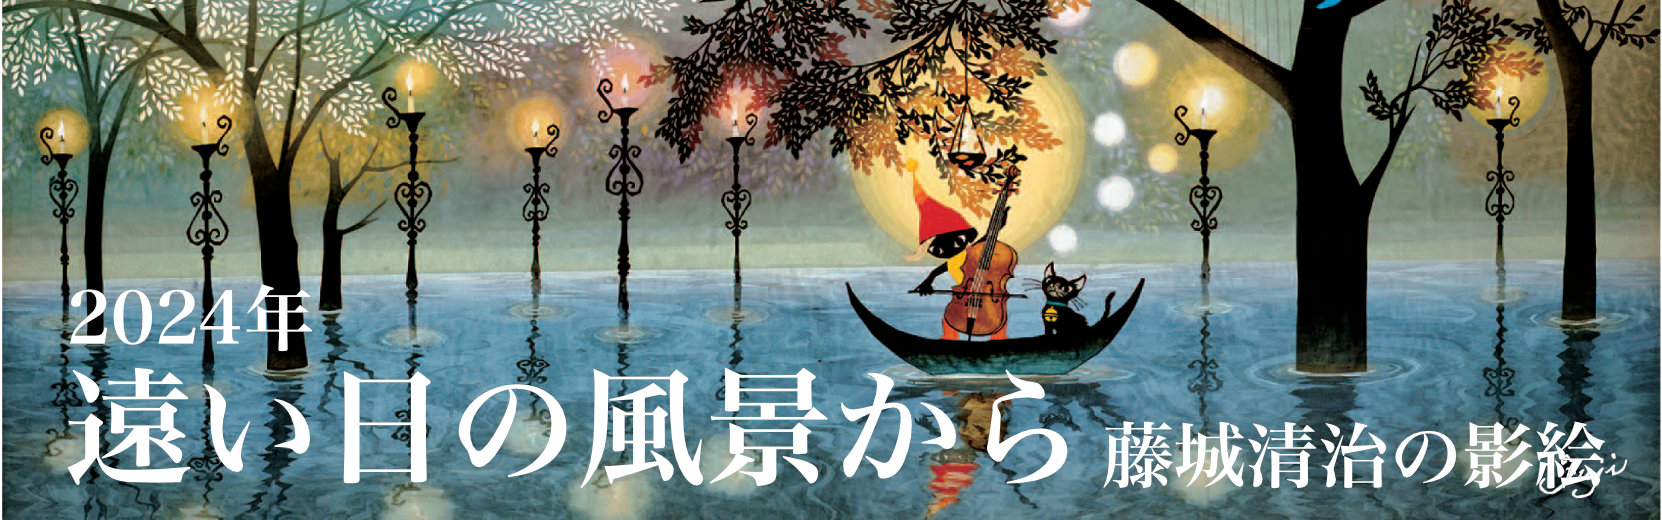 遠い日の風景から 藤城清治 2024年版カレンダー